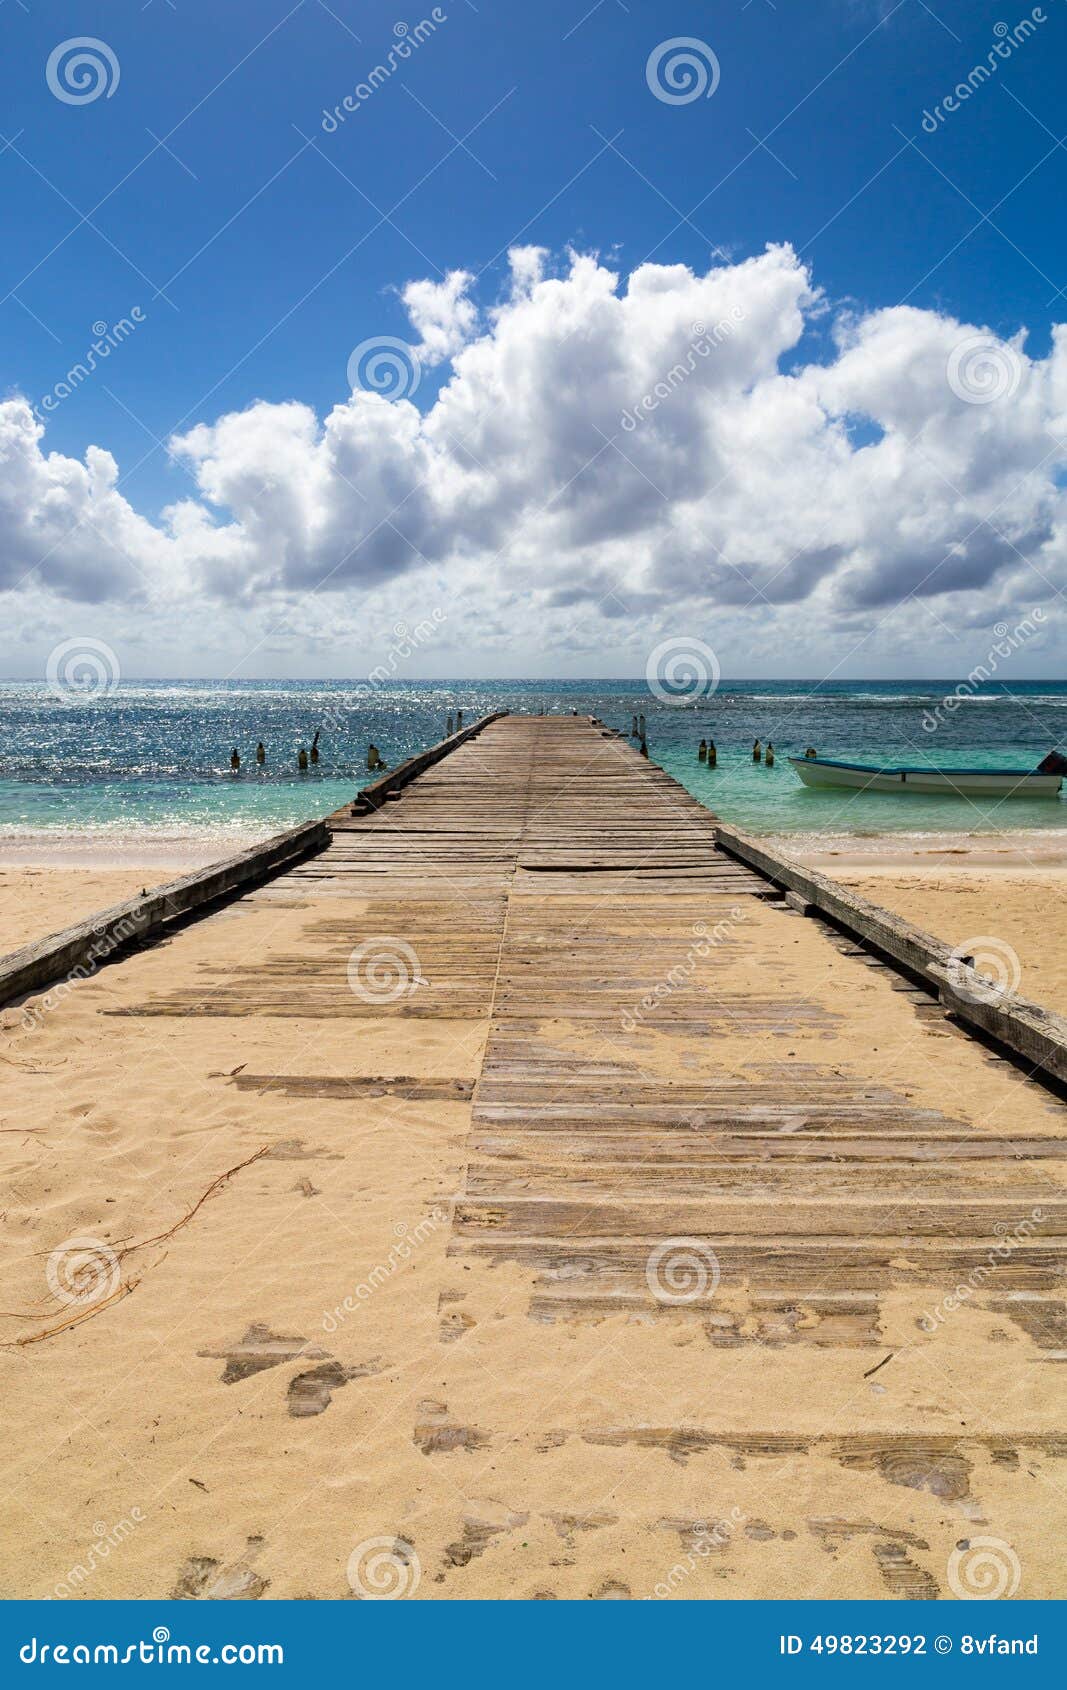 pier into the ocean saona domenican republic